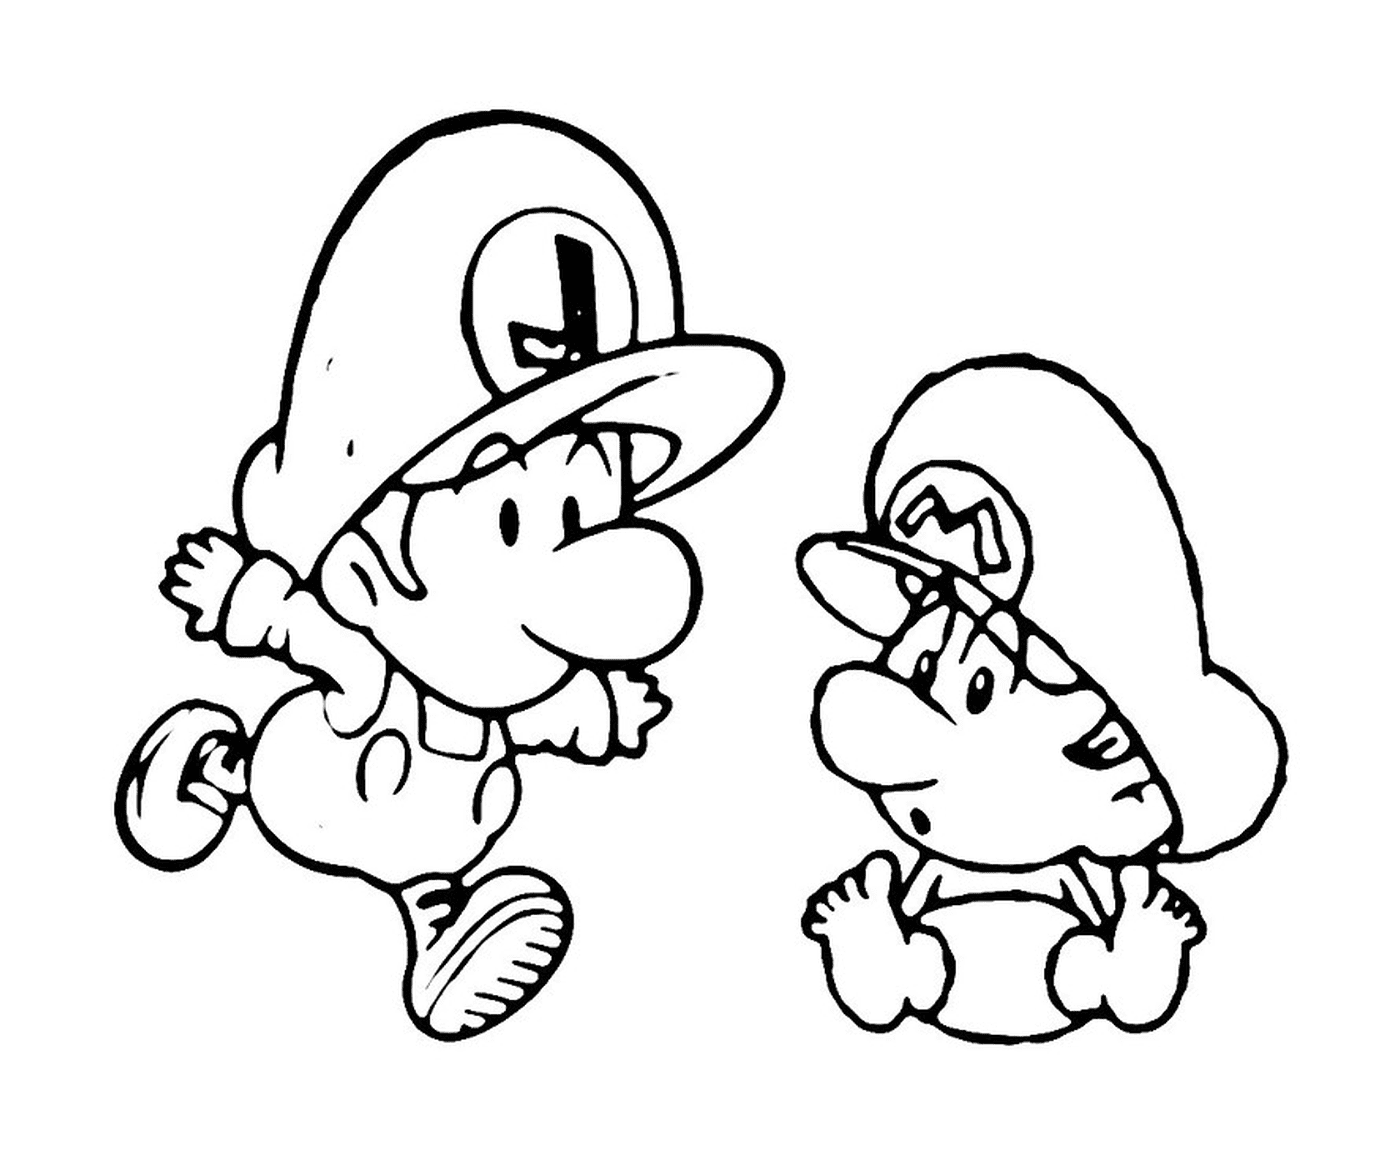  Duo Mario und Luigi 